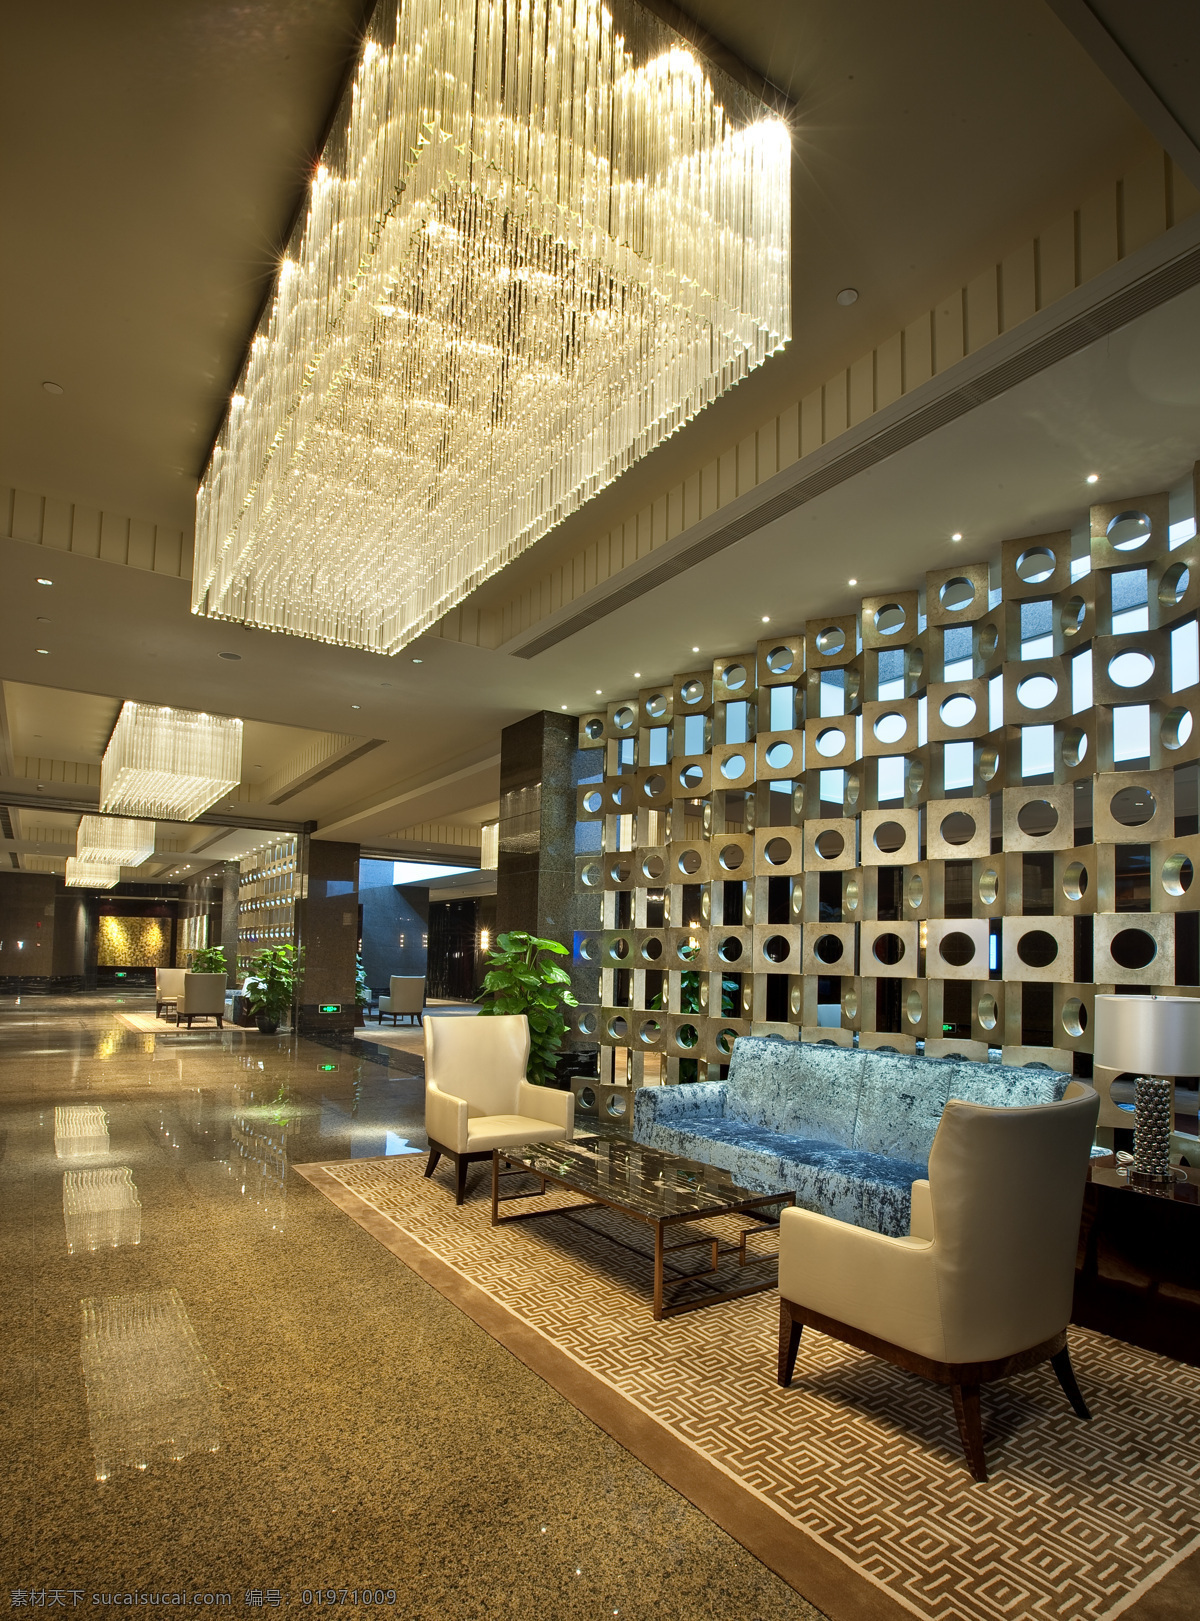 上海浦东 洲际 酒店 大厅 豪华 水晶吊灯 室内设计 效果图 室内装潢 环境家居